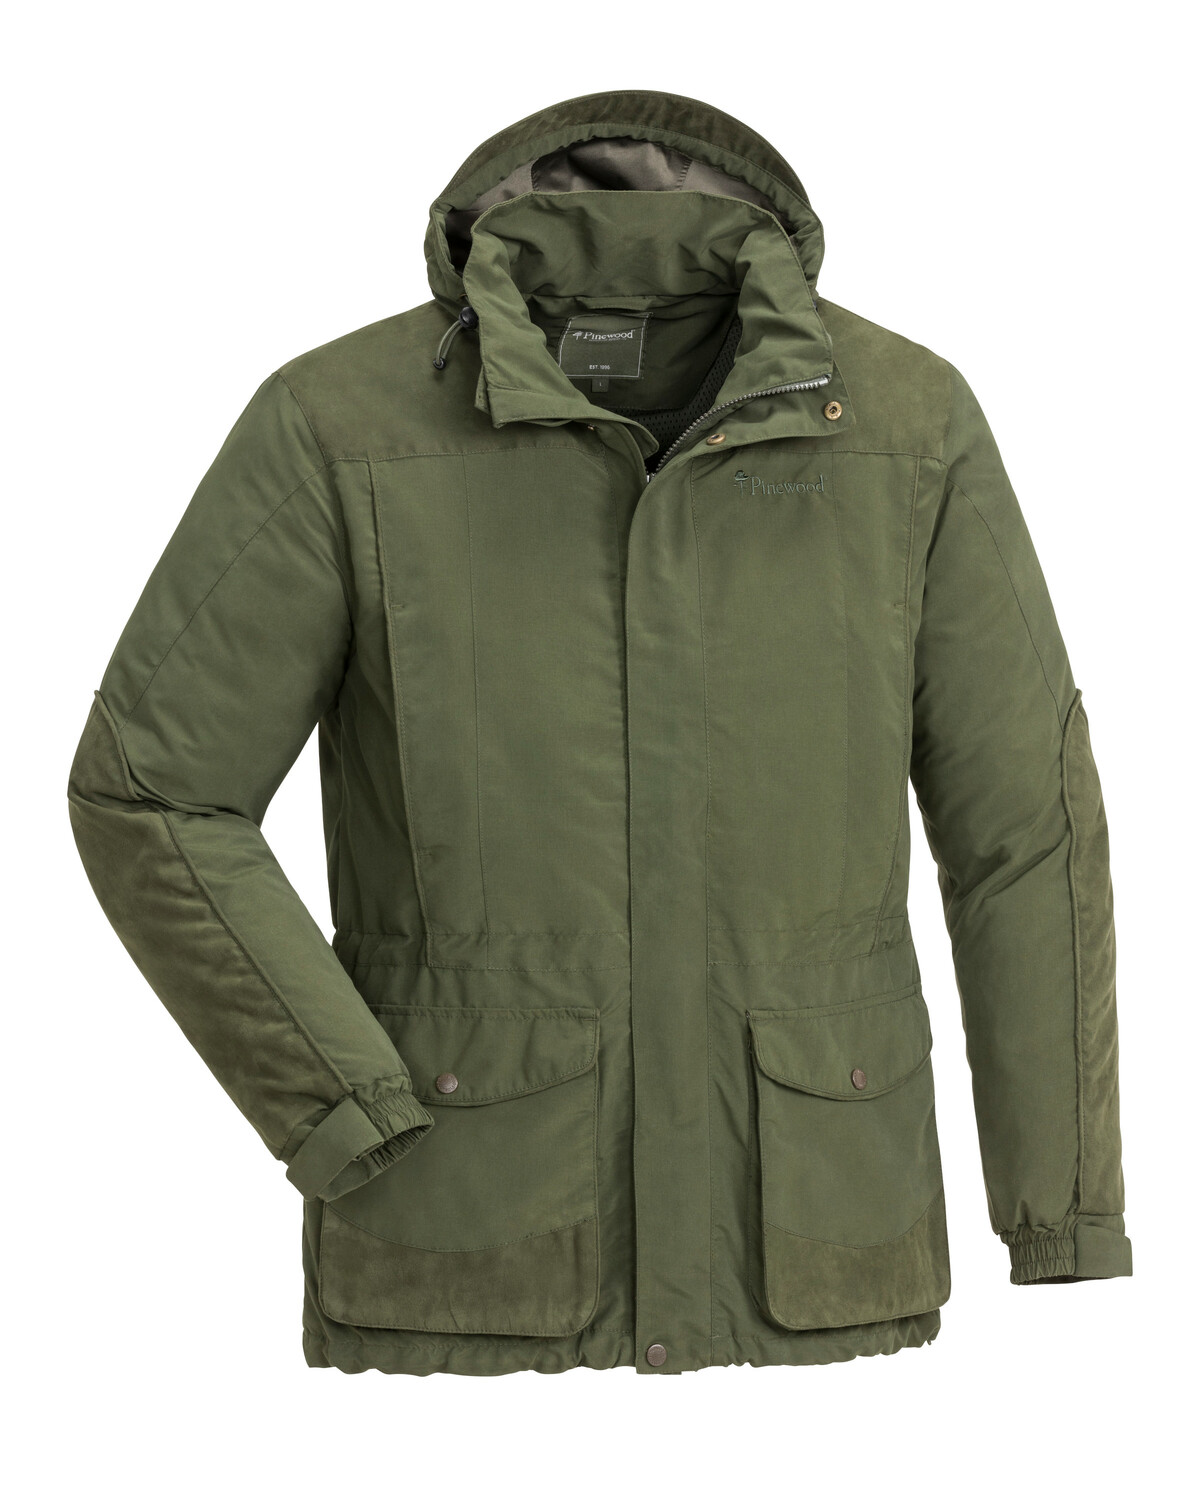 Зимняя охотничья куртка CADLEY  Pinewood 5804-135